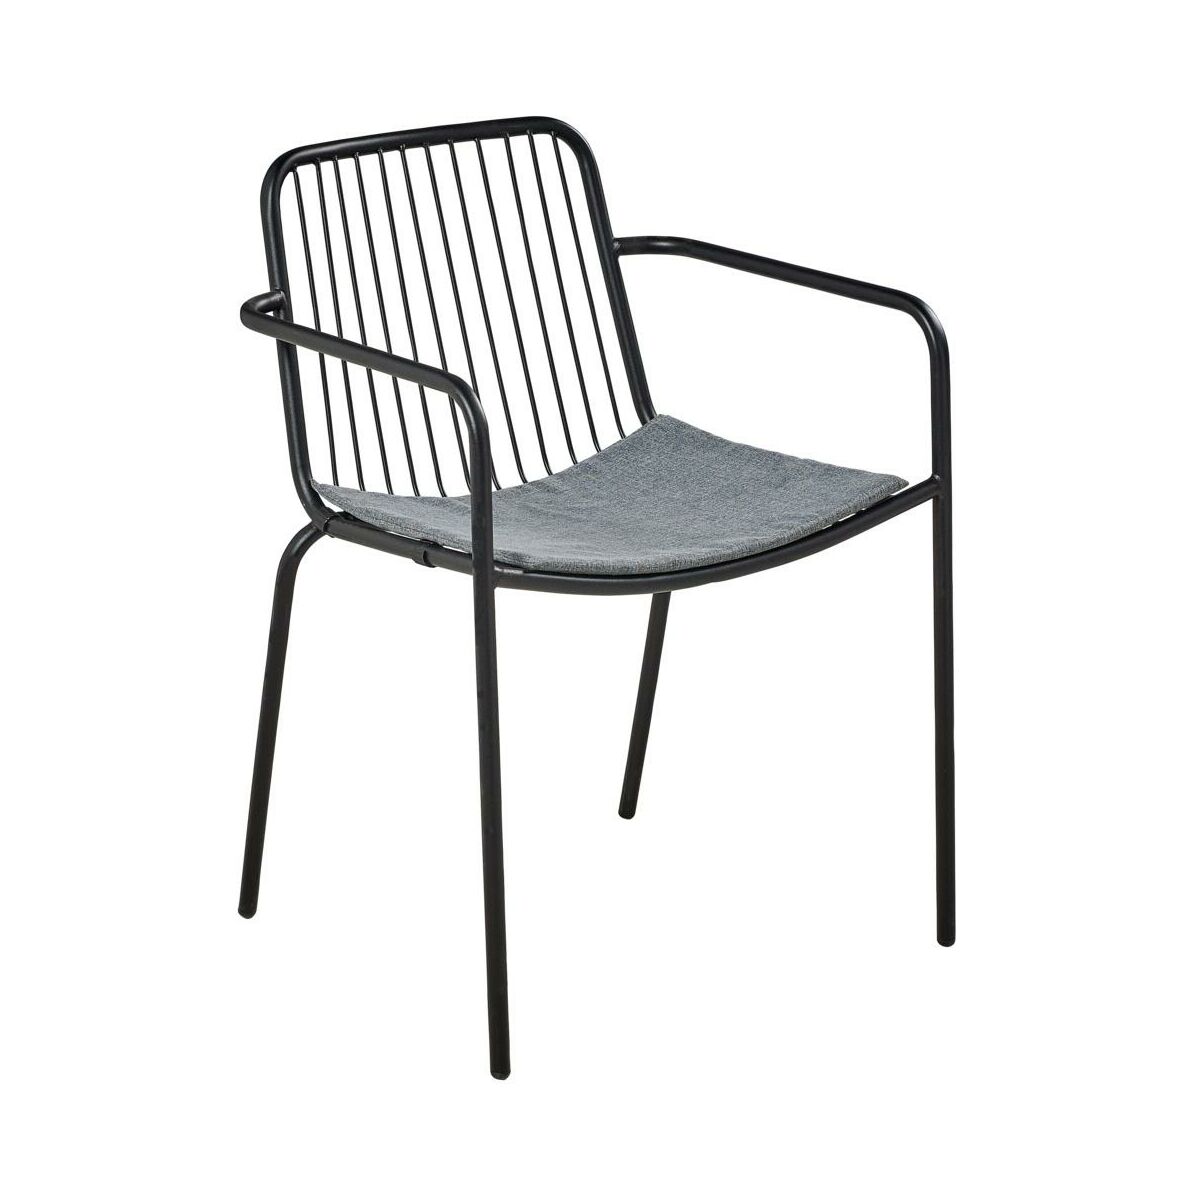 Krzeslo Ogrodowe Zoe Stalowe Czarne Krzesla Fotele Lawki Ogrodowe W Atrakcyjnej Cenie W Sklepach Leroy Merlin